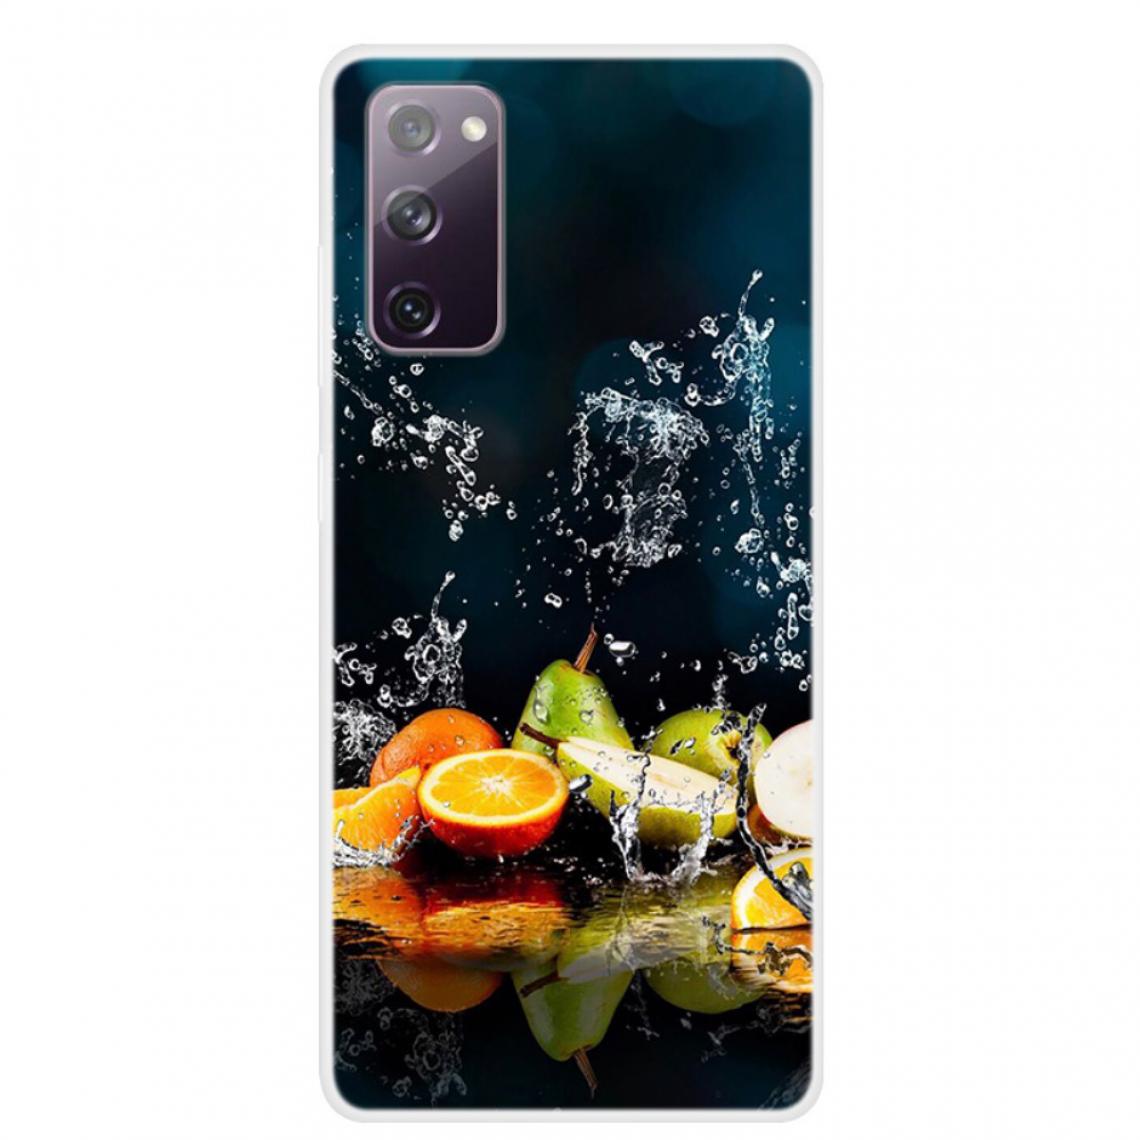 Other - Coque en TPU impression de motifs souple fruit pour votre Samsung Galaxy S20 FE/S20 FE 5G - Coque, étui smartphone